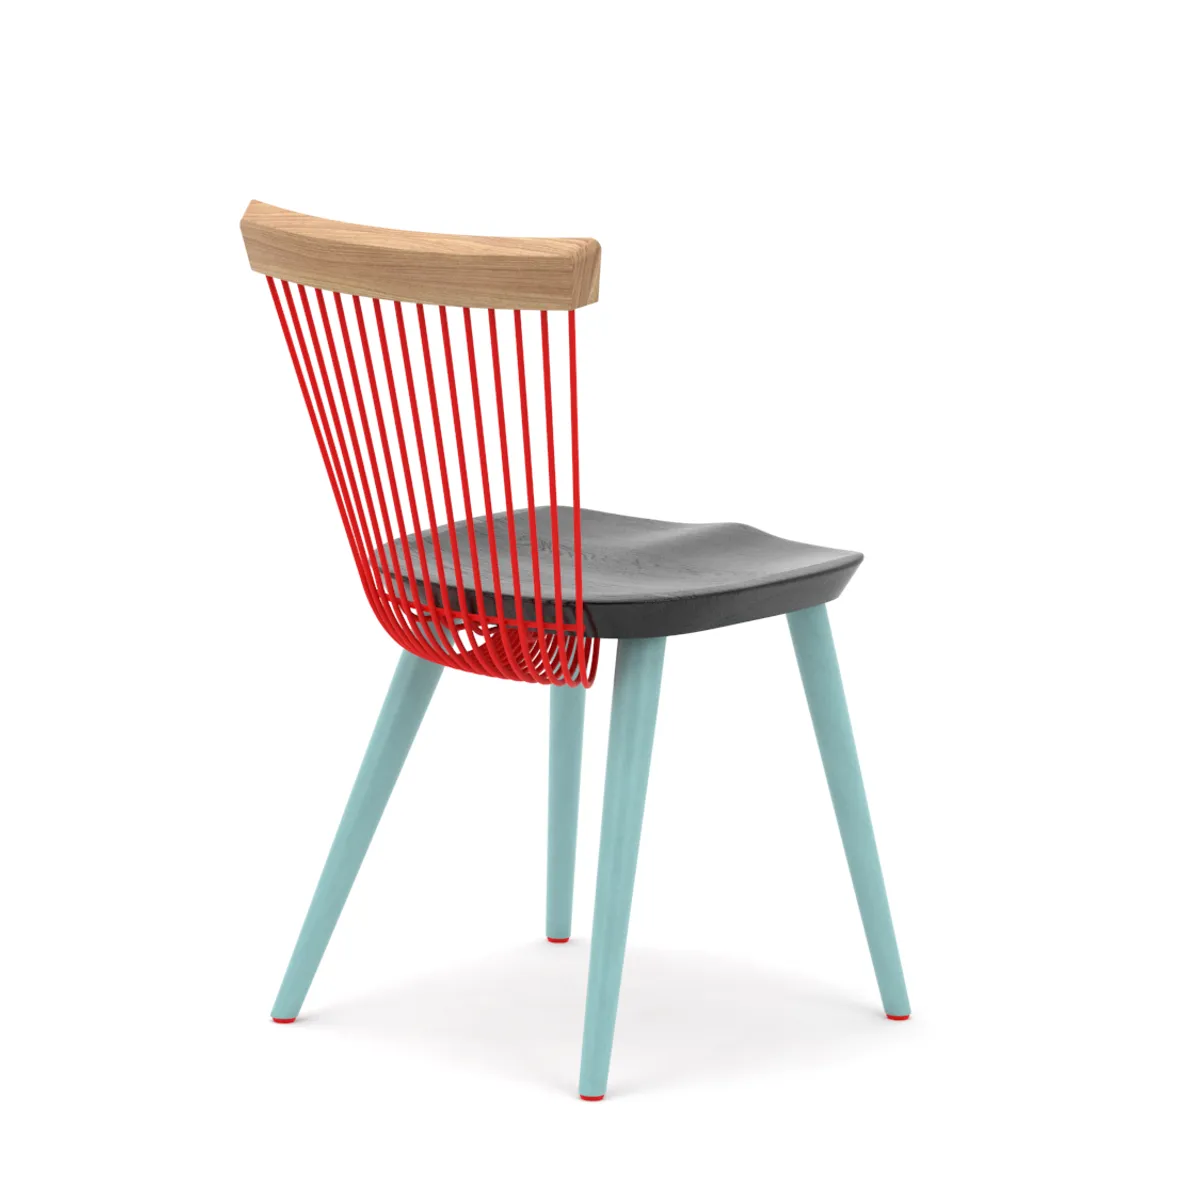 Ww Colour Chair 5